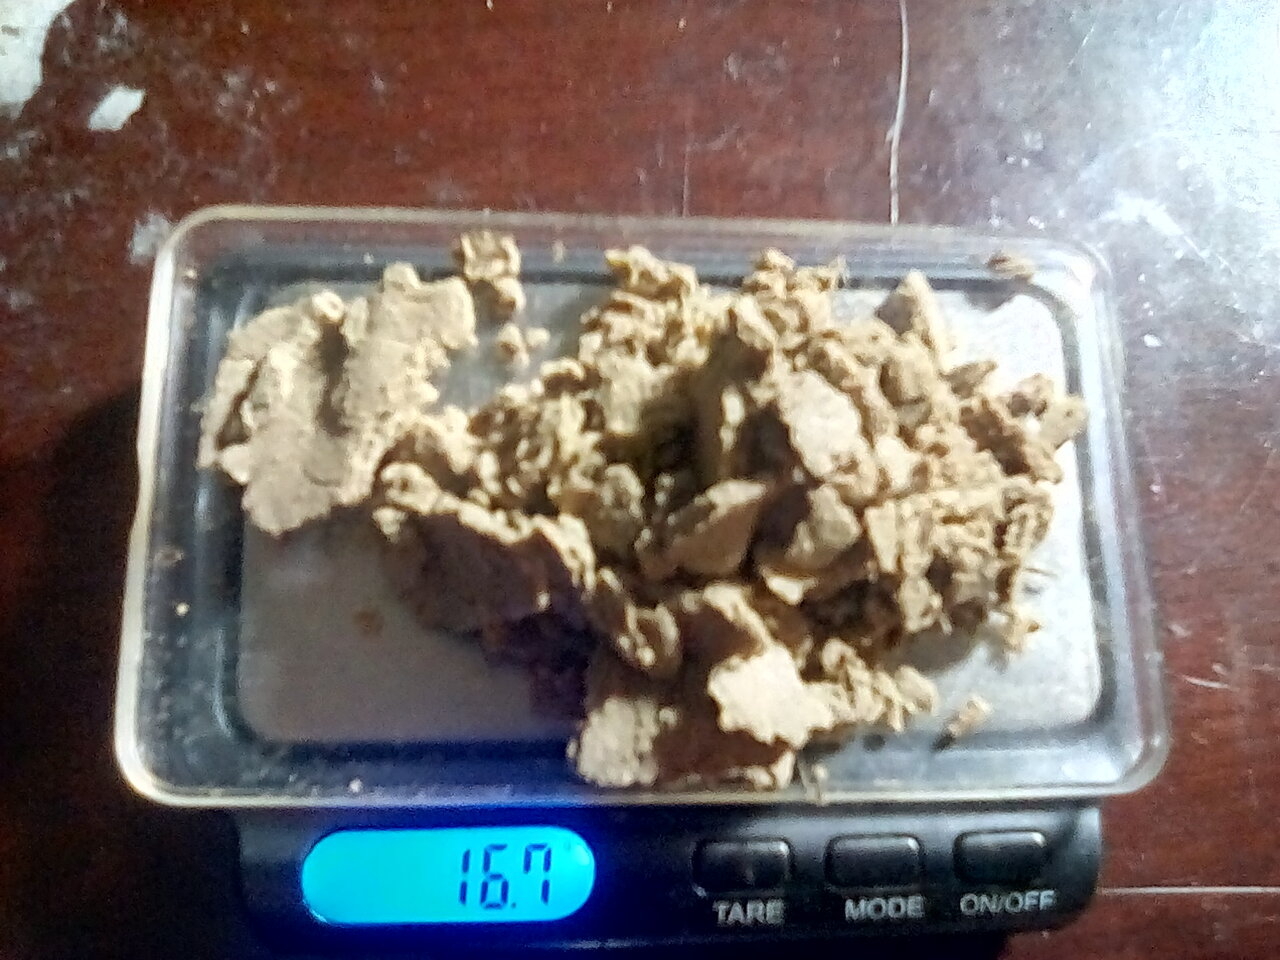 16.7 grams of water hash